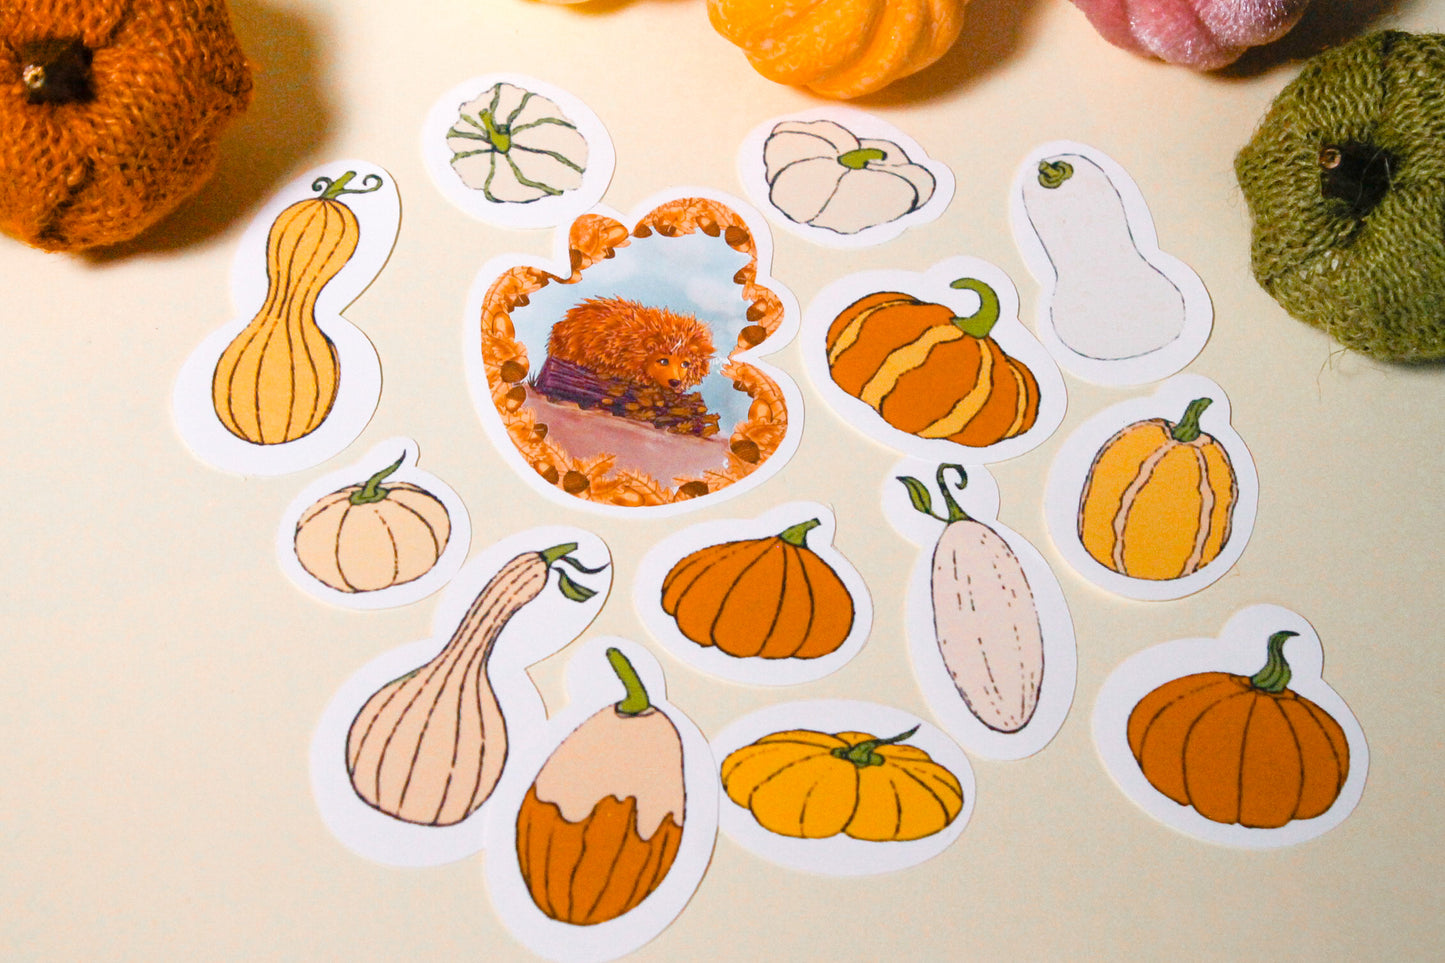 Autumn Love: Gourds & Pumpkins & A Hedgehog Friend - Handmade Vinyl Sticker Pack